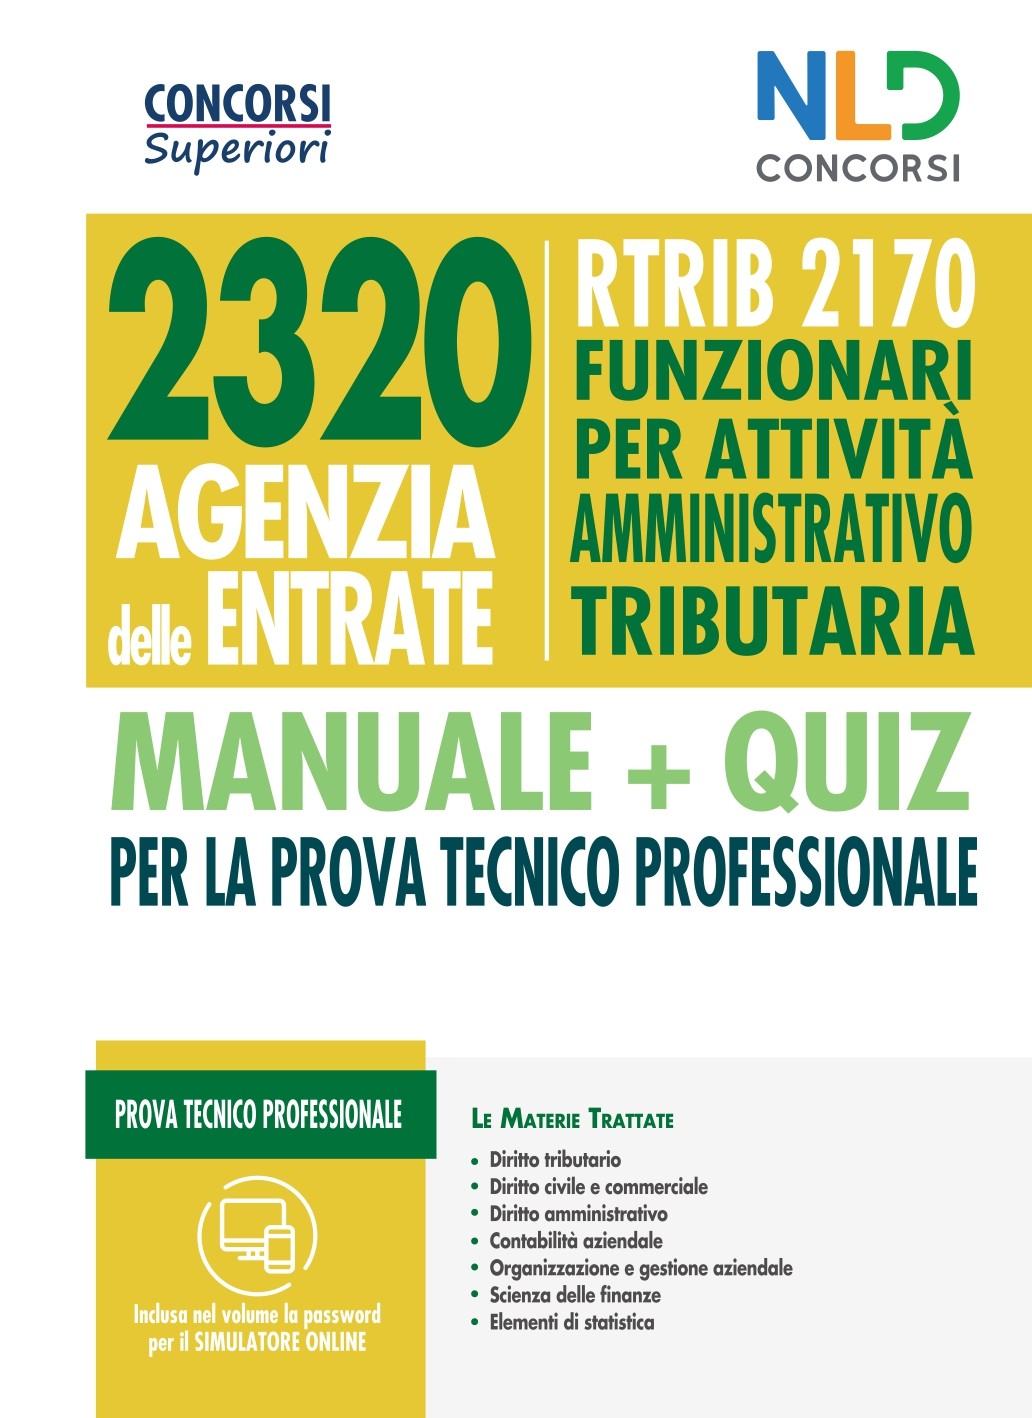 Concorso 2320 Agenzia delle Entrate - RTRIB2170 Funzionari per attivitÃ� amministrativo tributaria - manuale + quiz completo per la prova tecnico professionale